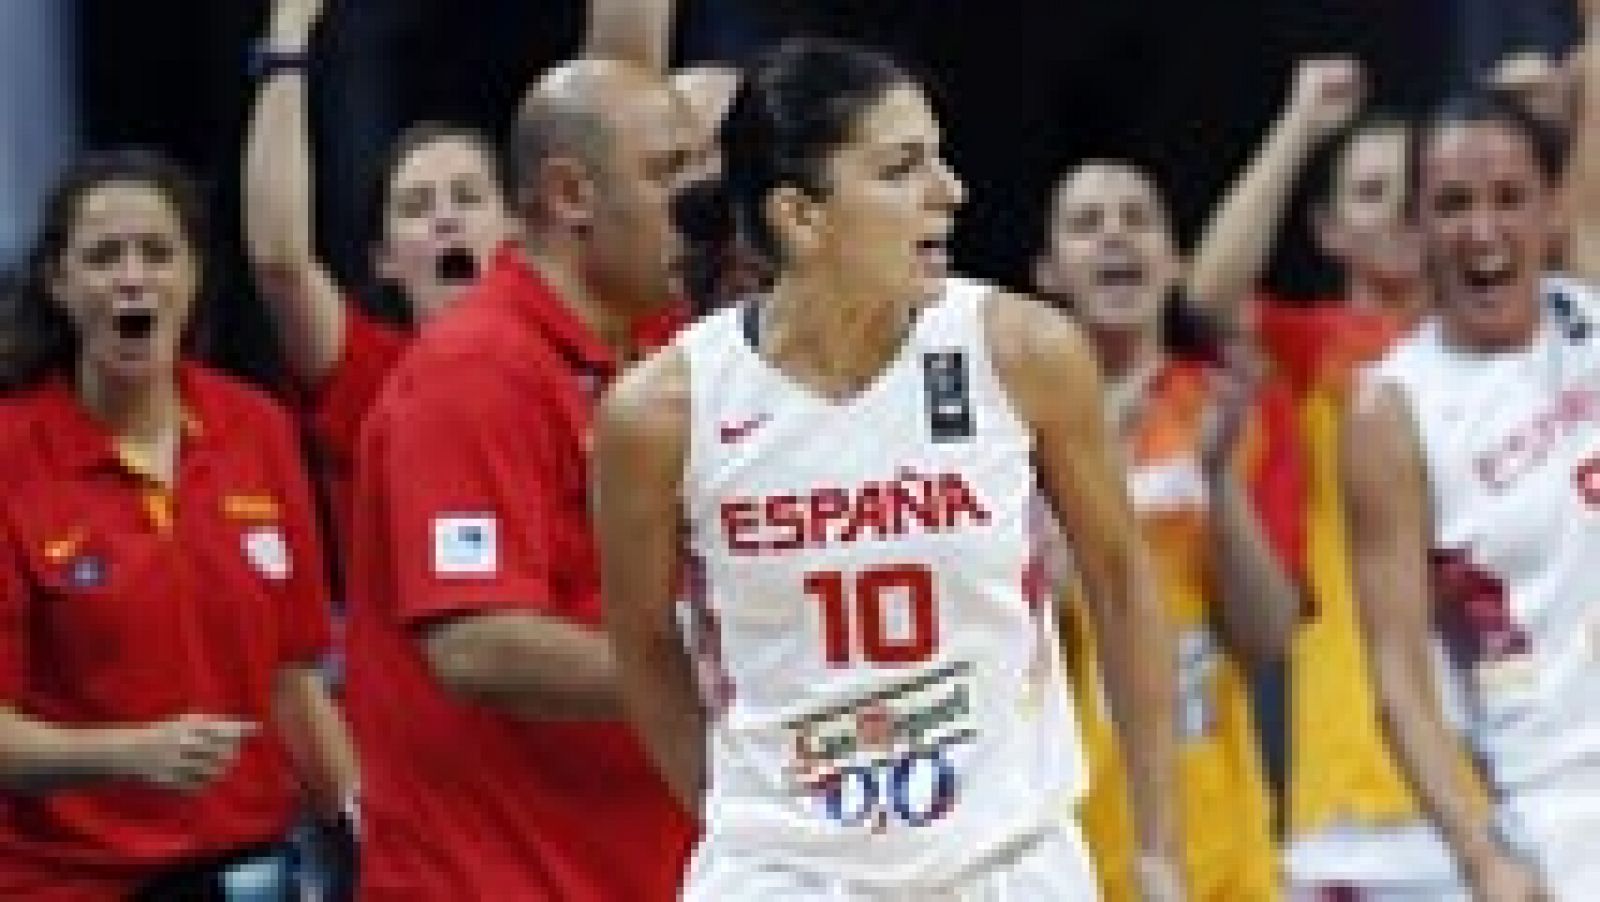 España va a organizar el Mundial de baloncesto femenino en 2018. Así lo ha anunciado en la mañana de este martes la FIBA. La competición se celebrará del 1 al 9 de Septiembre de 2018. La otra candidata era Isarael. La selección española es la actual subcampeona mundial tras conseguir la medalla de plata en el Campeonato de este verano disputado en Turquía.